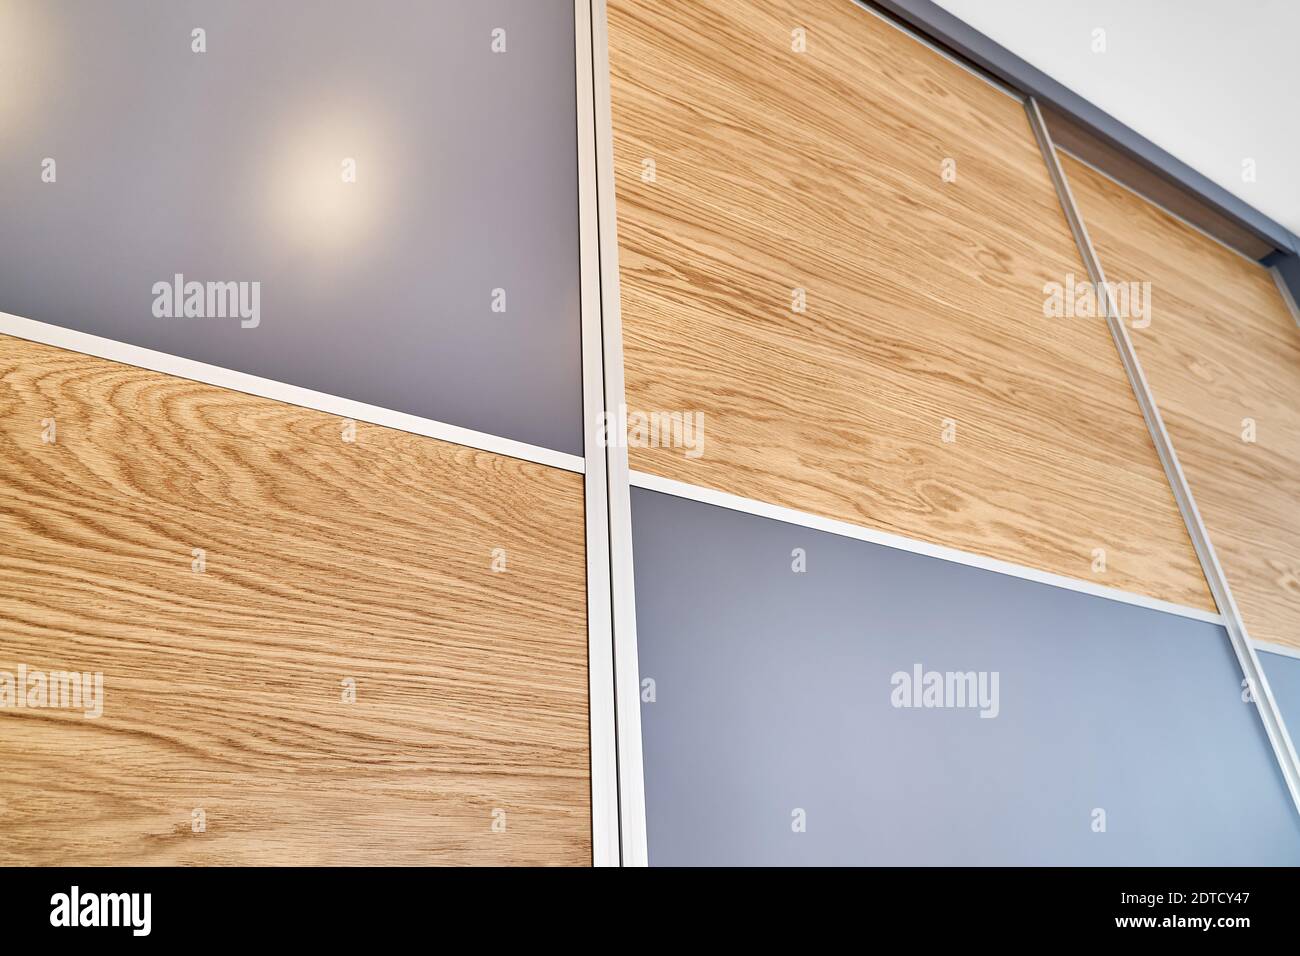 Hölzerne Kleiderschranktüren aus hellbrauner Natureiche Holz mit eleganten  Strukturmustern und blanken grauen Teilen Stockfotografie - Alamy